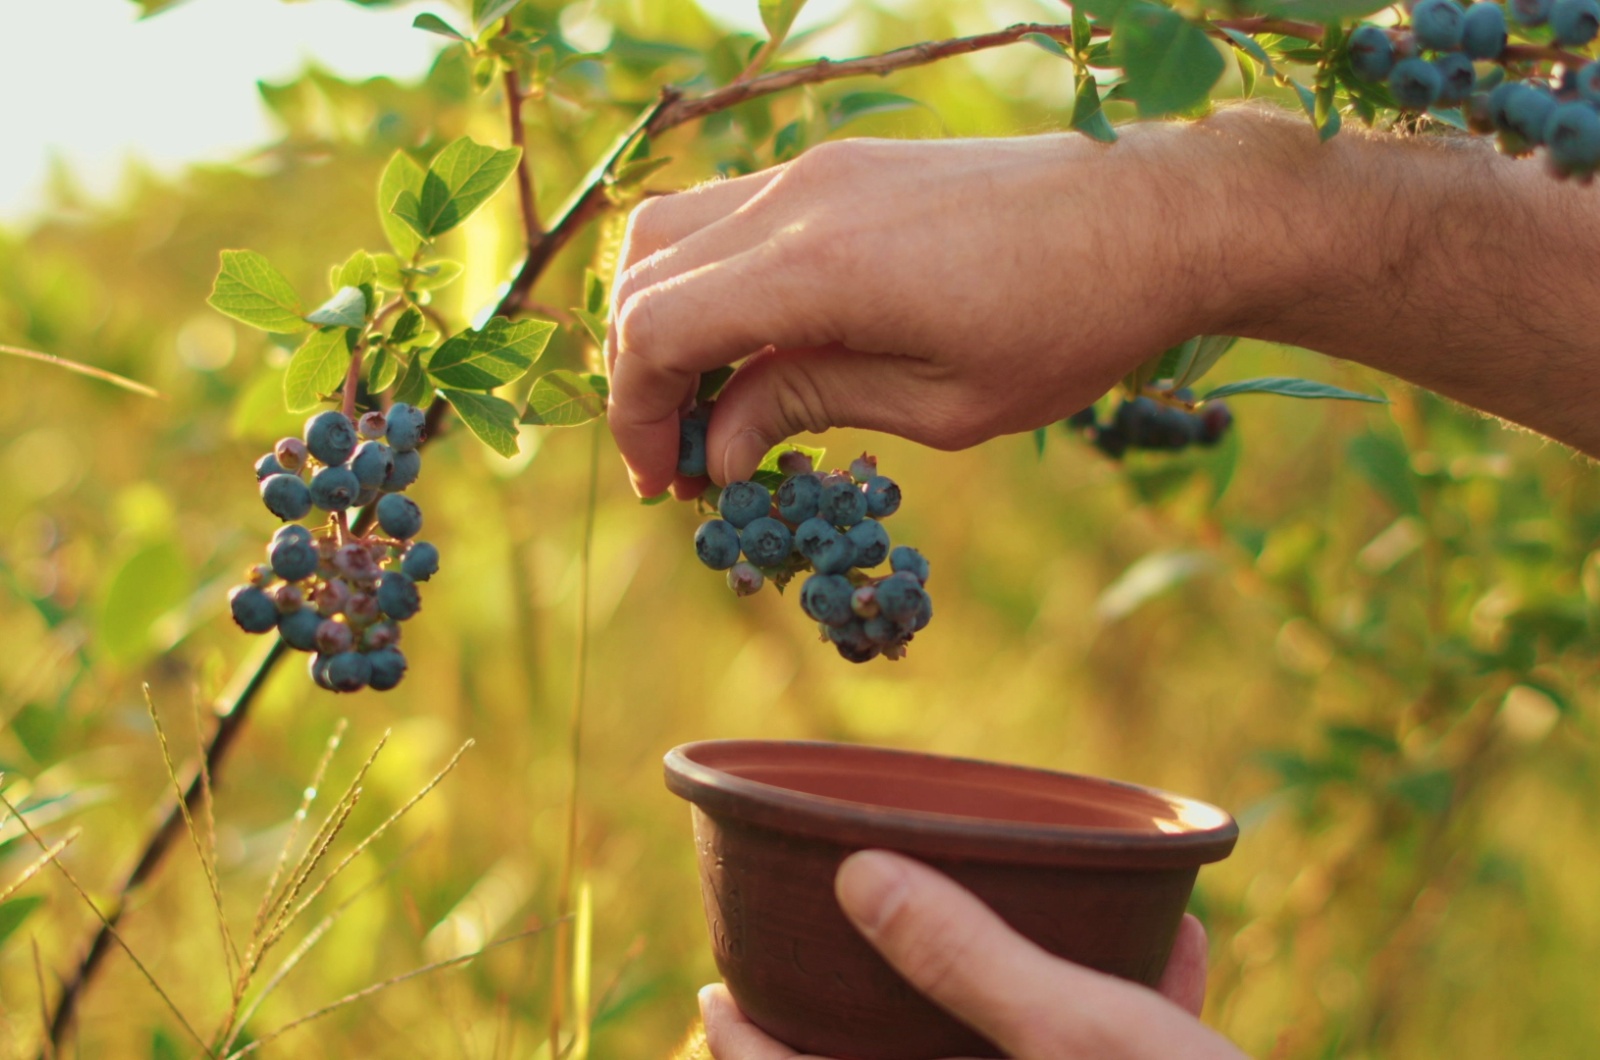 farmer's hand picking blueberries